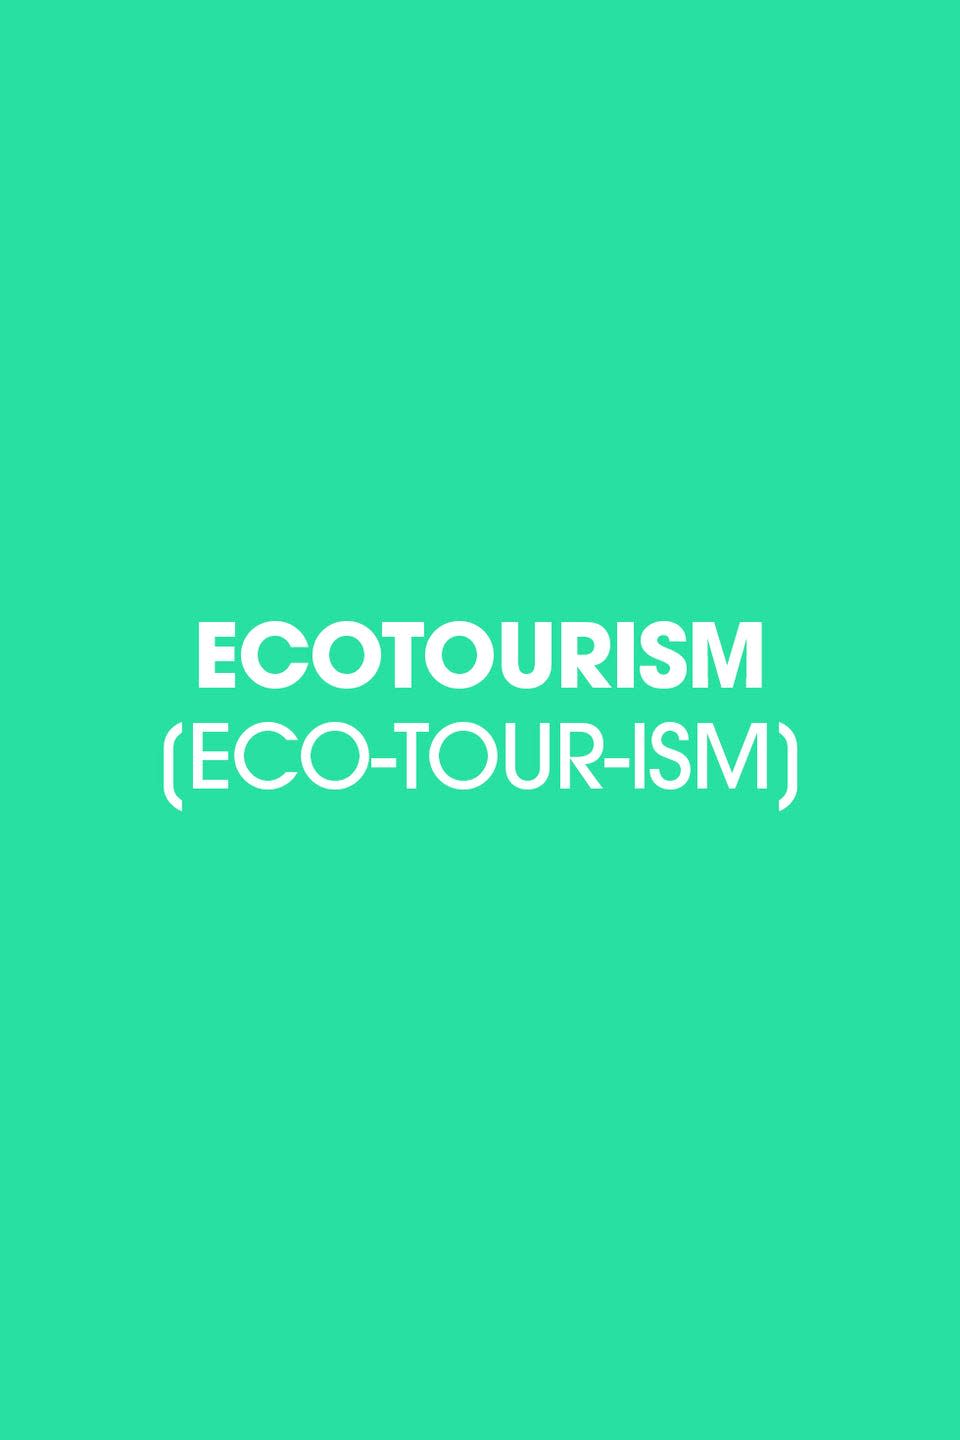 1980: Ecotourism